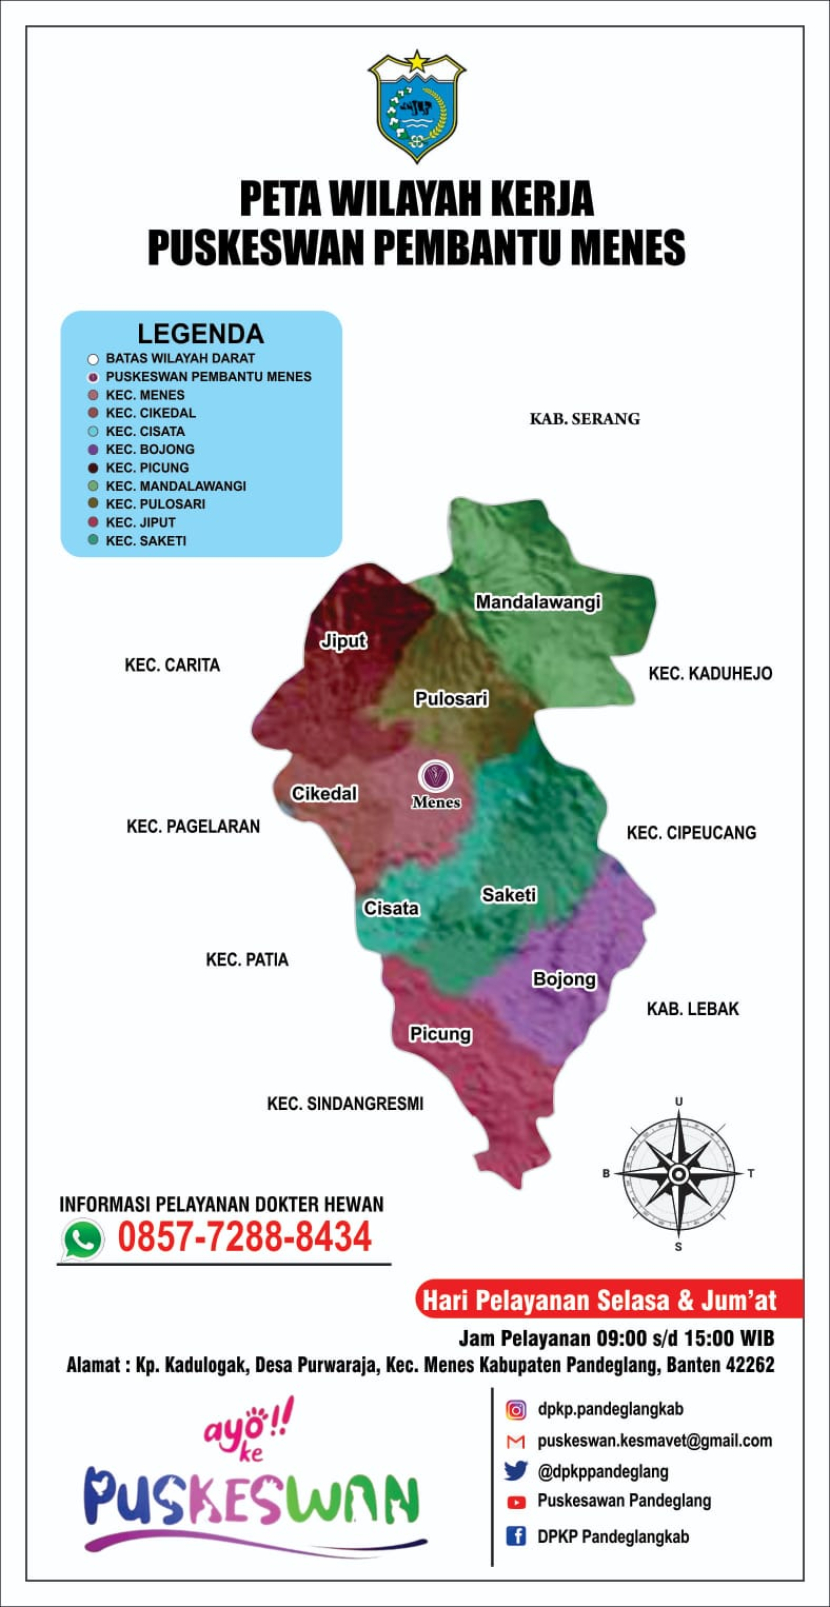 Berdasarkan peta wilayah kerja Puskeswan Pembantu Menes terdiri dari Kecamatan Jiput, Cikedal, Menes, Cisata, Bojong, Picung, Mandalawangi, Pulosari, dan Kecamatan Saketi